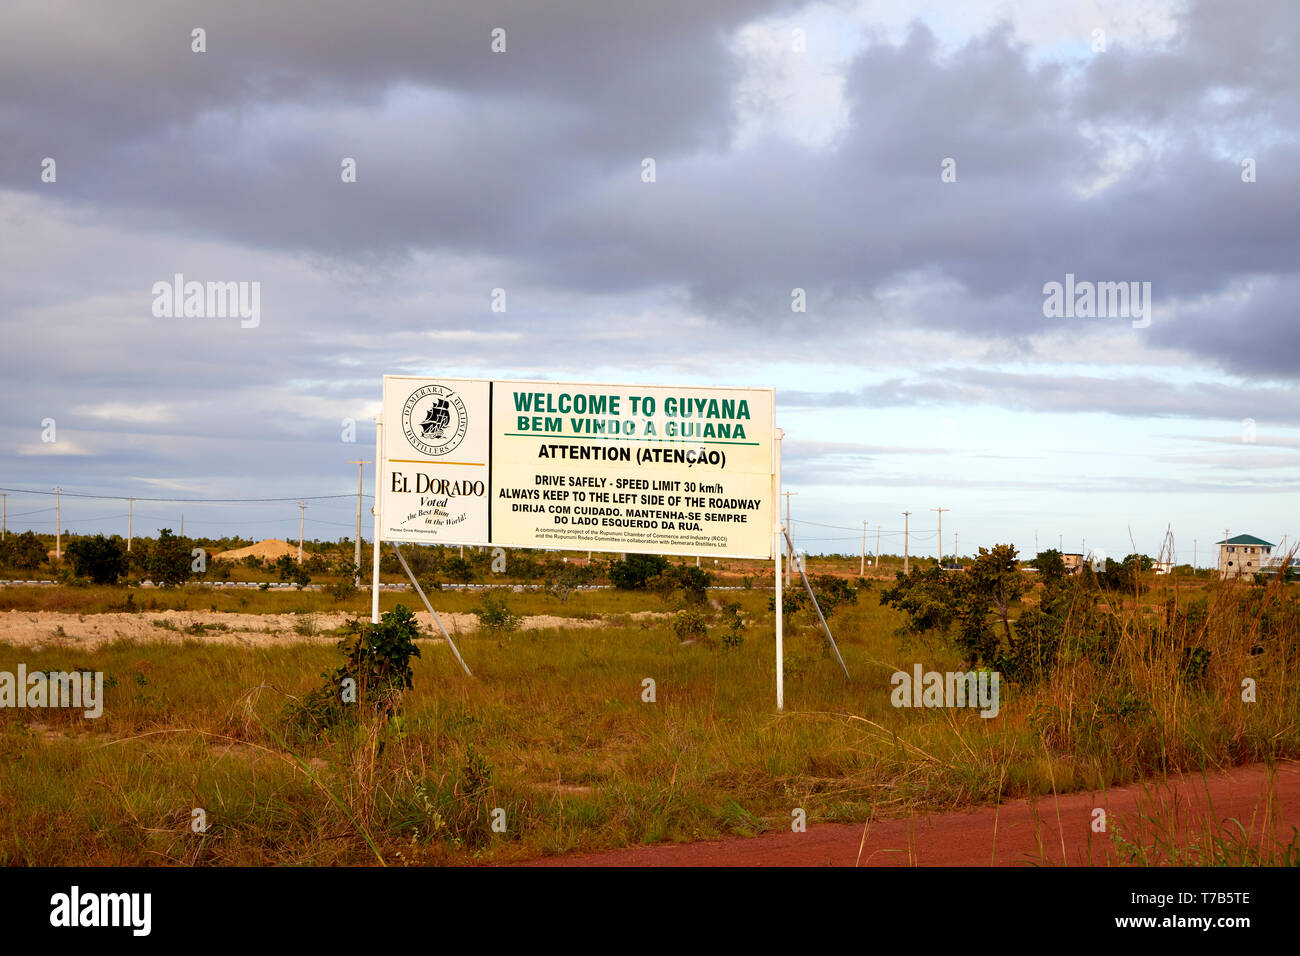 Benvenuti alla Guyana Accedi Lethem Guyana dopo il varco di frontiera tra la Bom fin dal Brasile e Lethem Guyana America del Sud Foto Stock